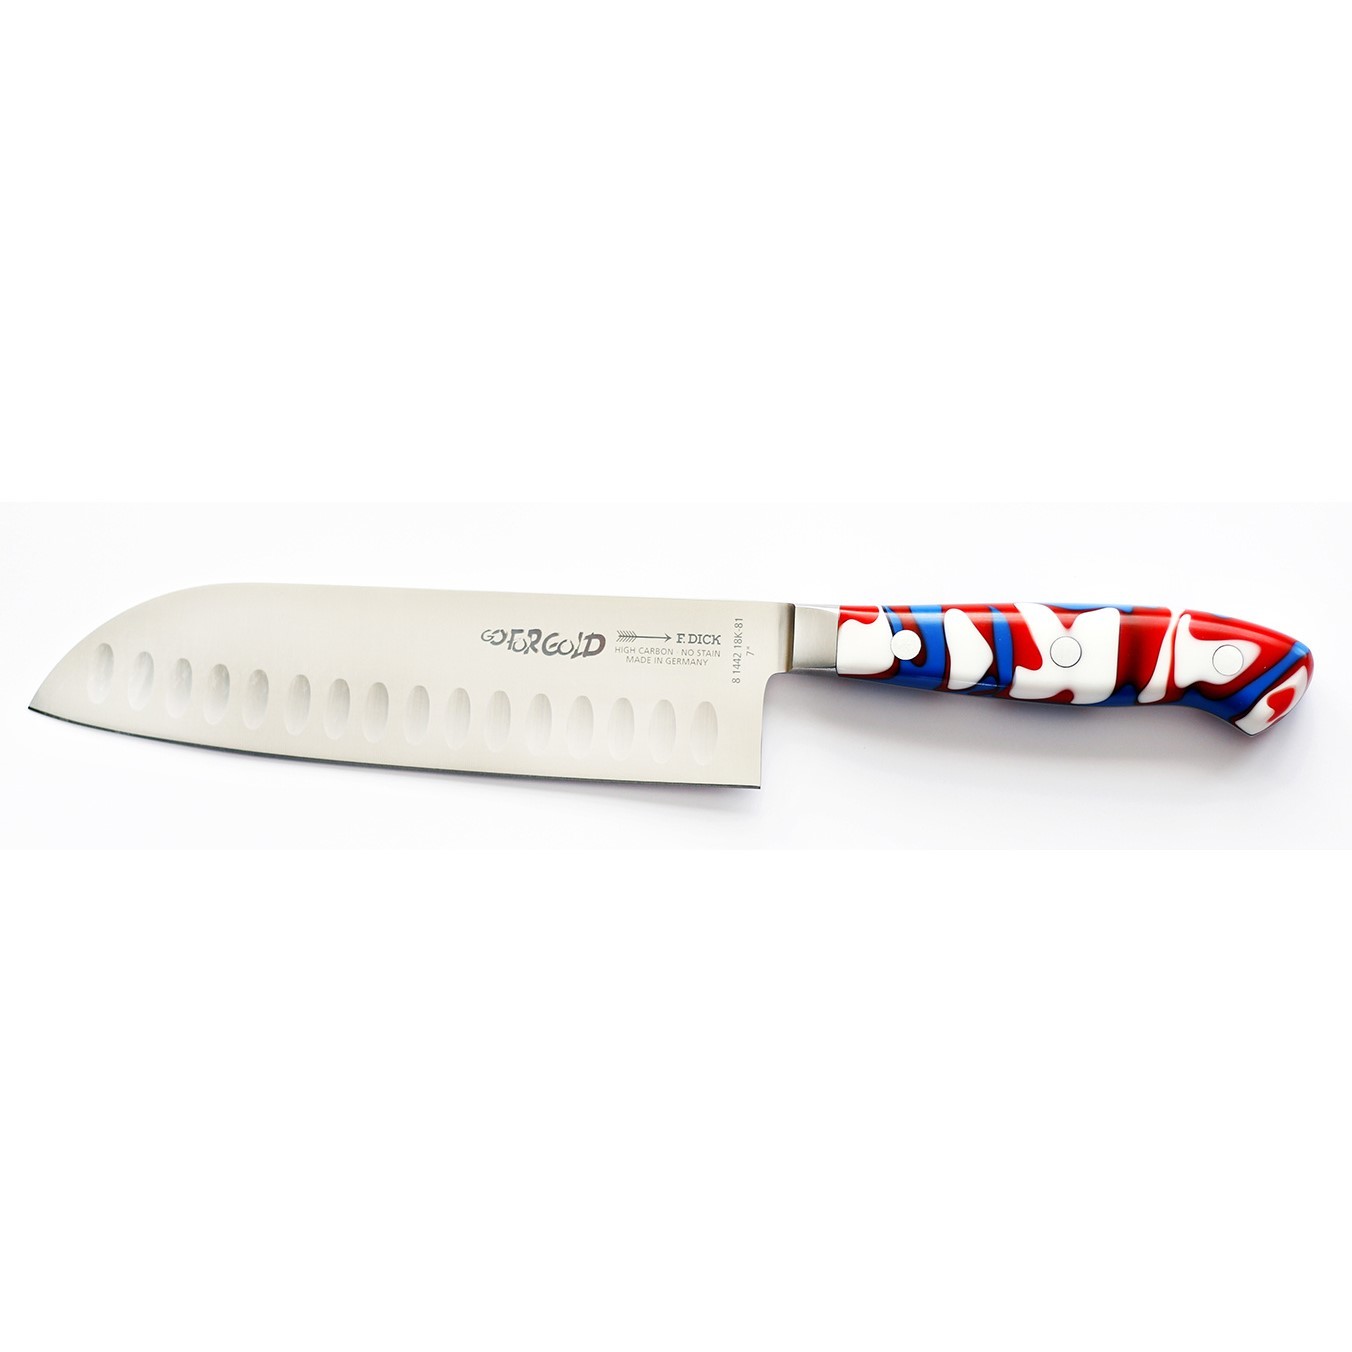 Santoku nůž PREMIER PLUS PATRIOT 18 cm, nerezová ocel, F.DICK